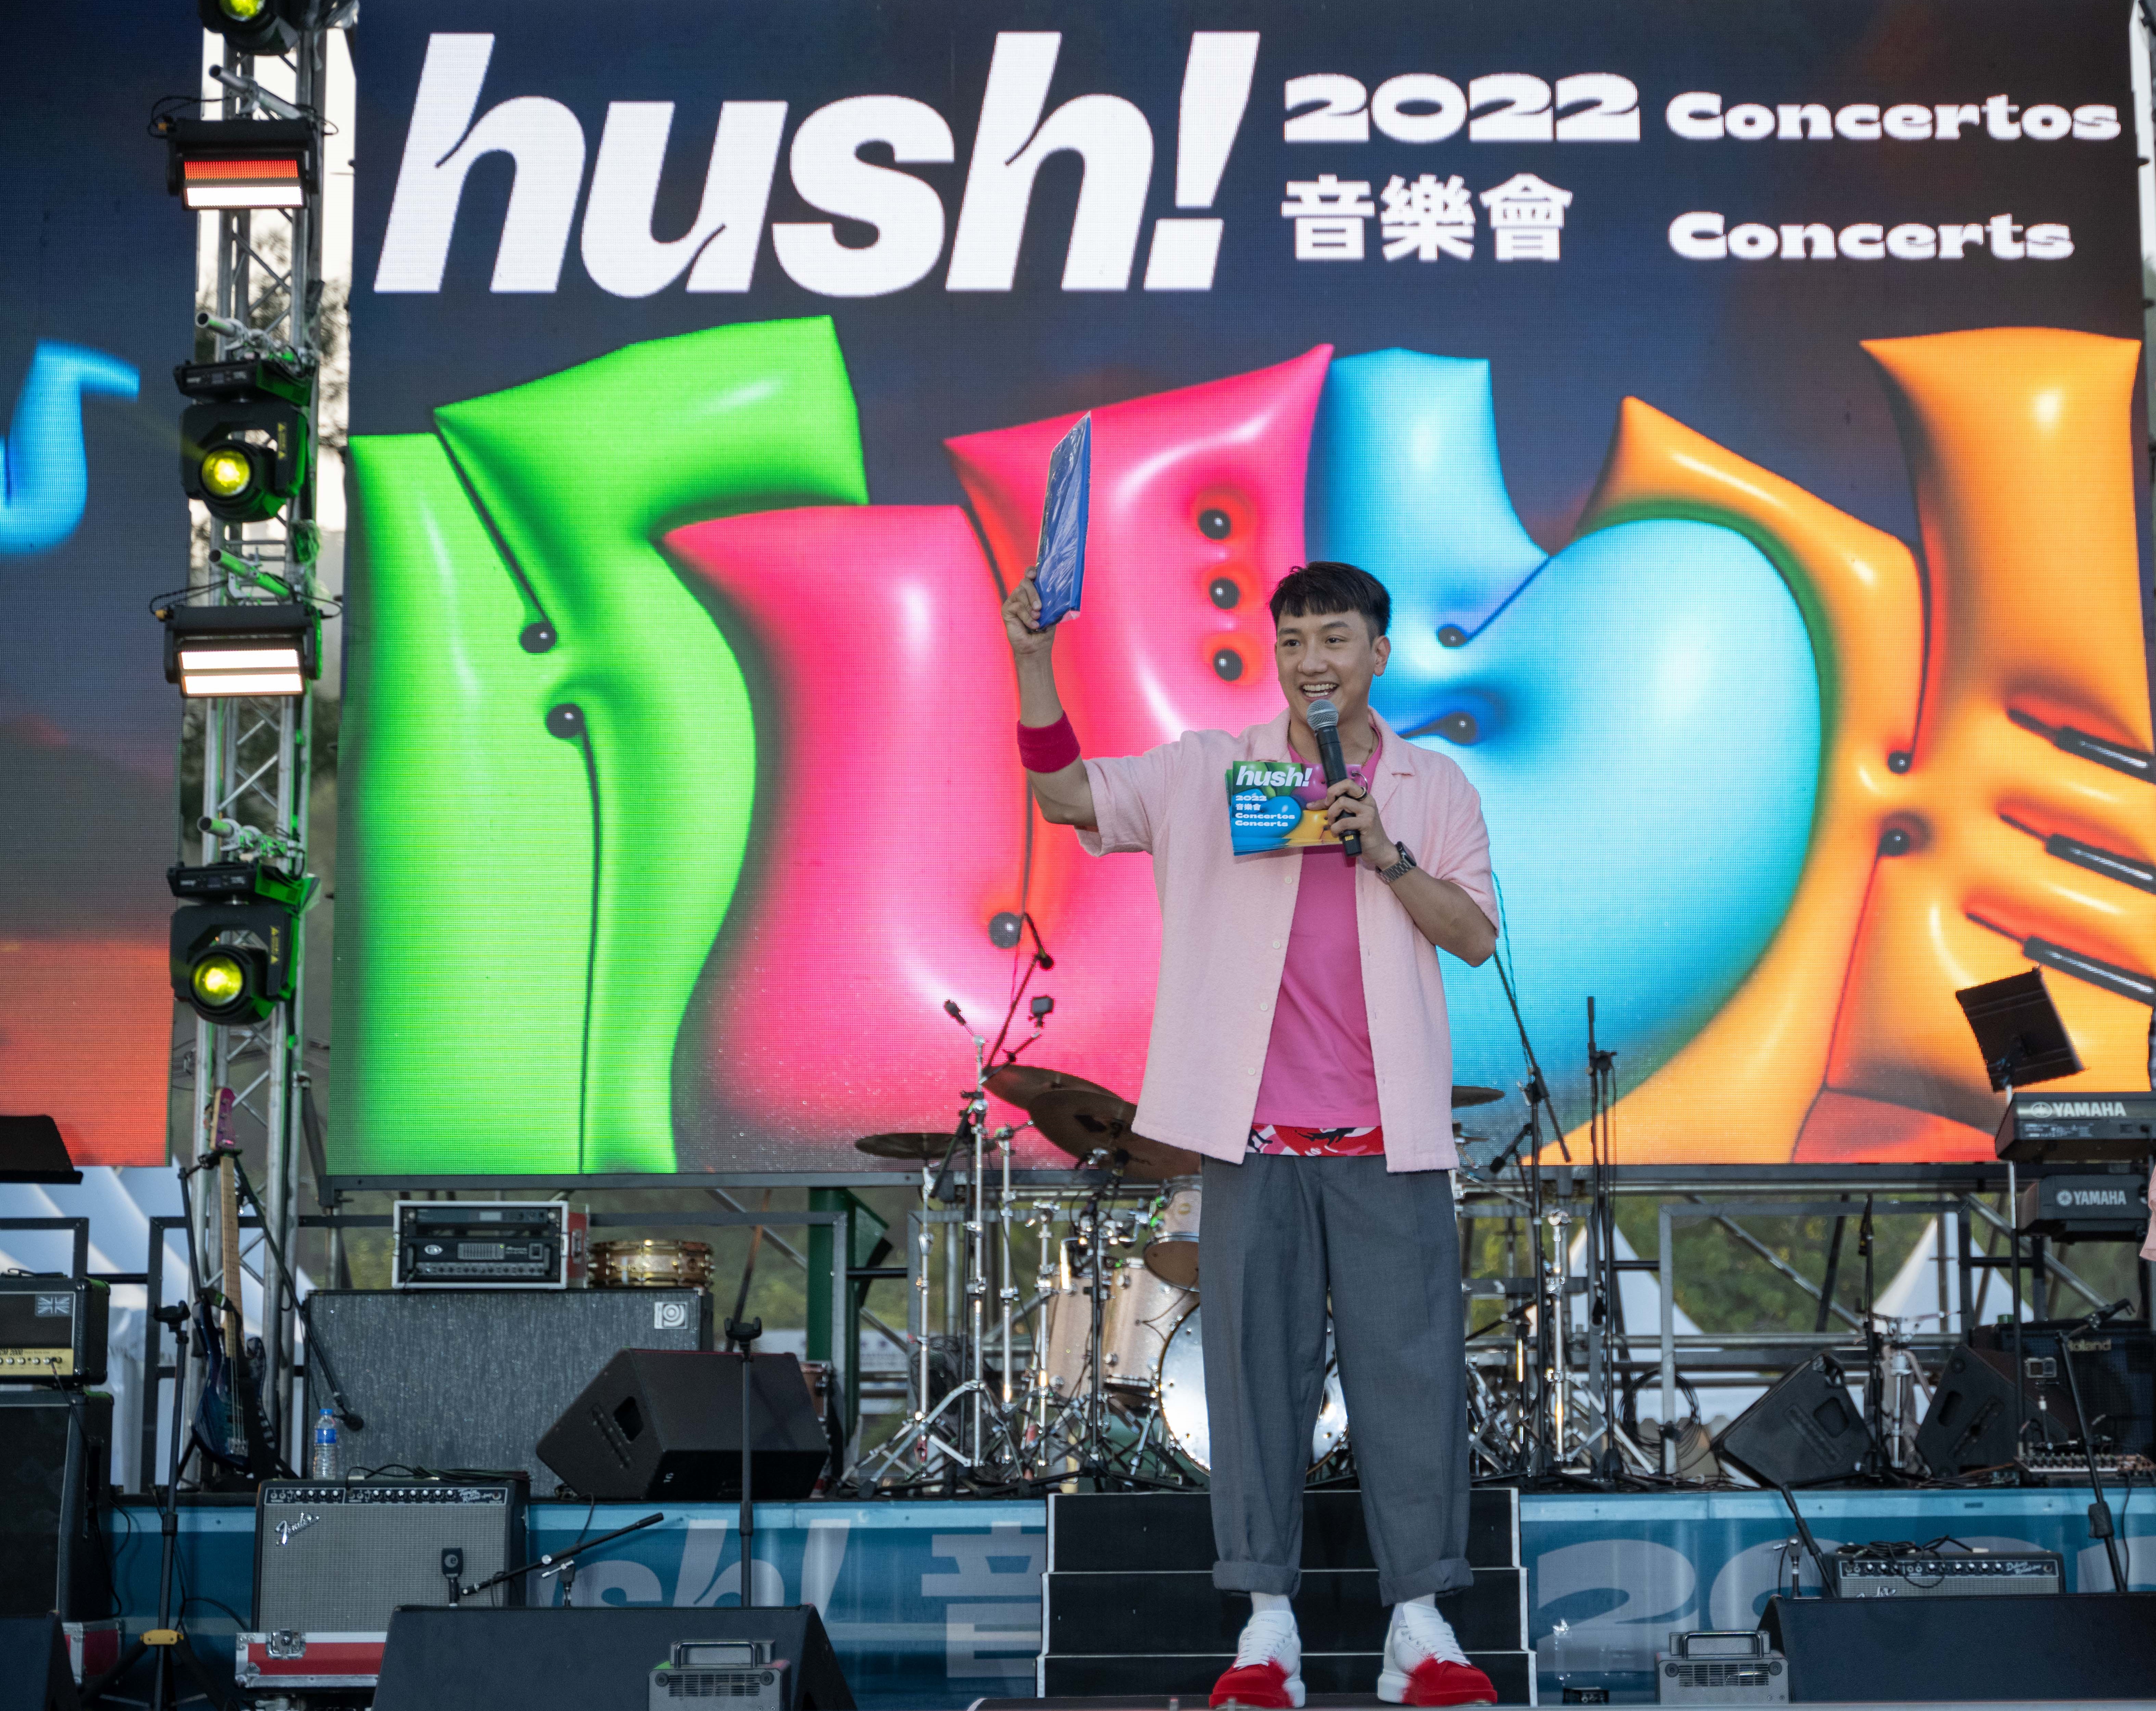 周啓陽 Elvis Chao司儀工作紀錄: 2022 Hush! Full Music Concert